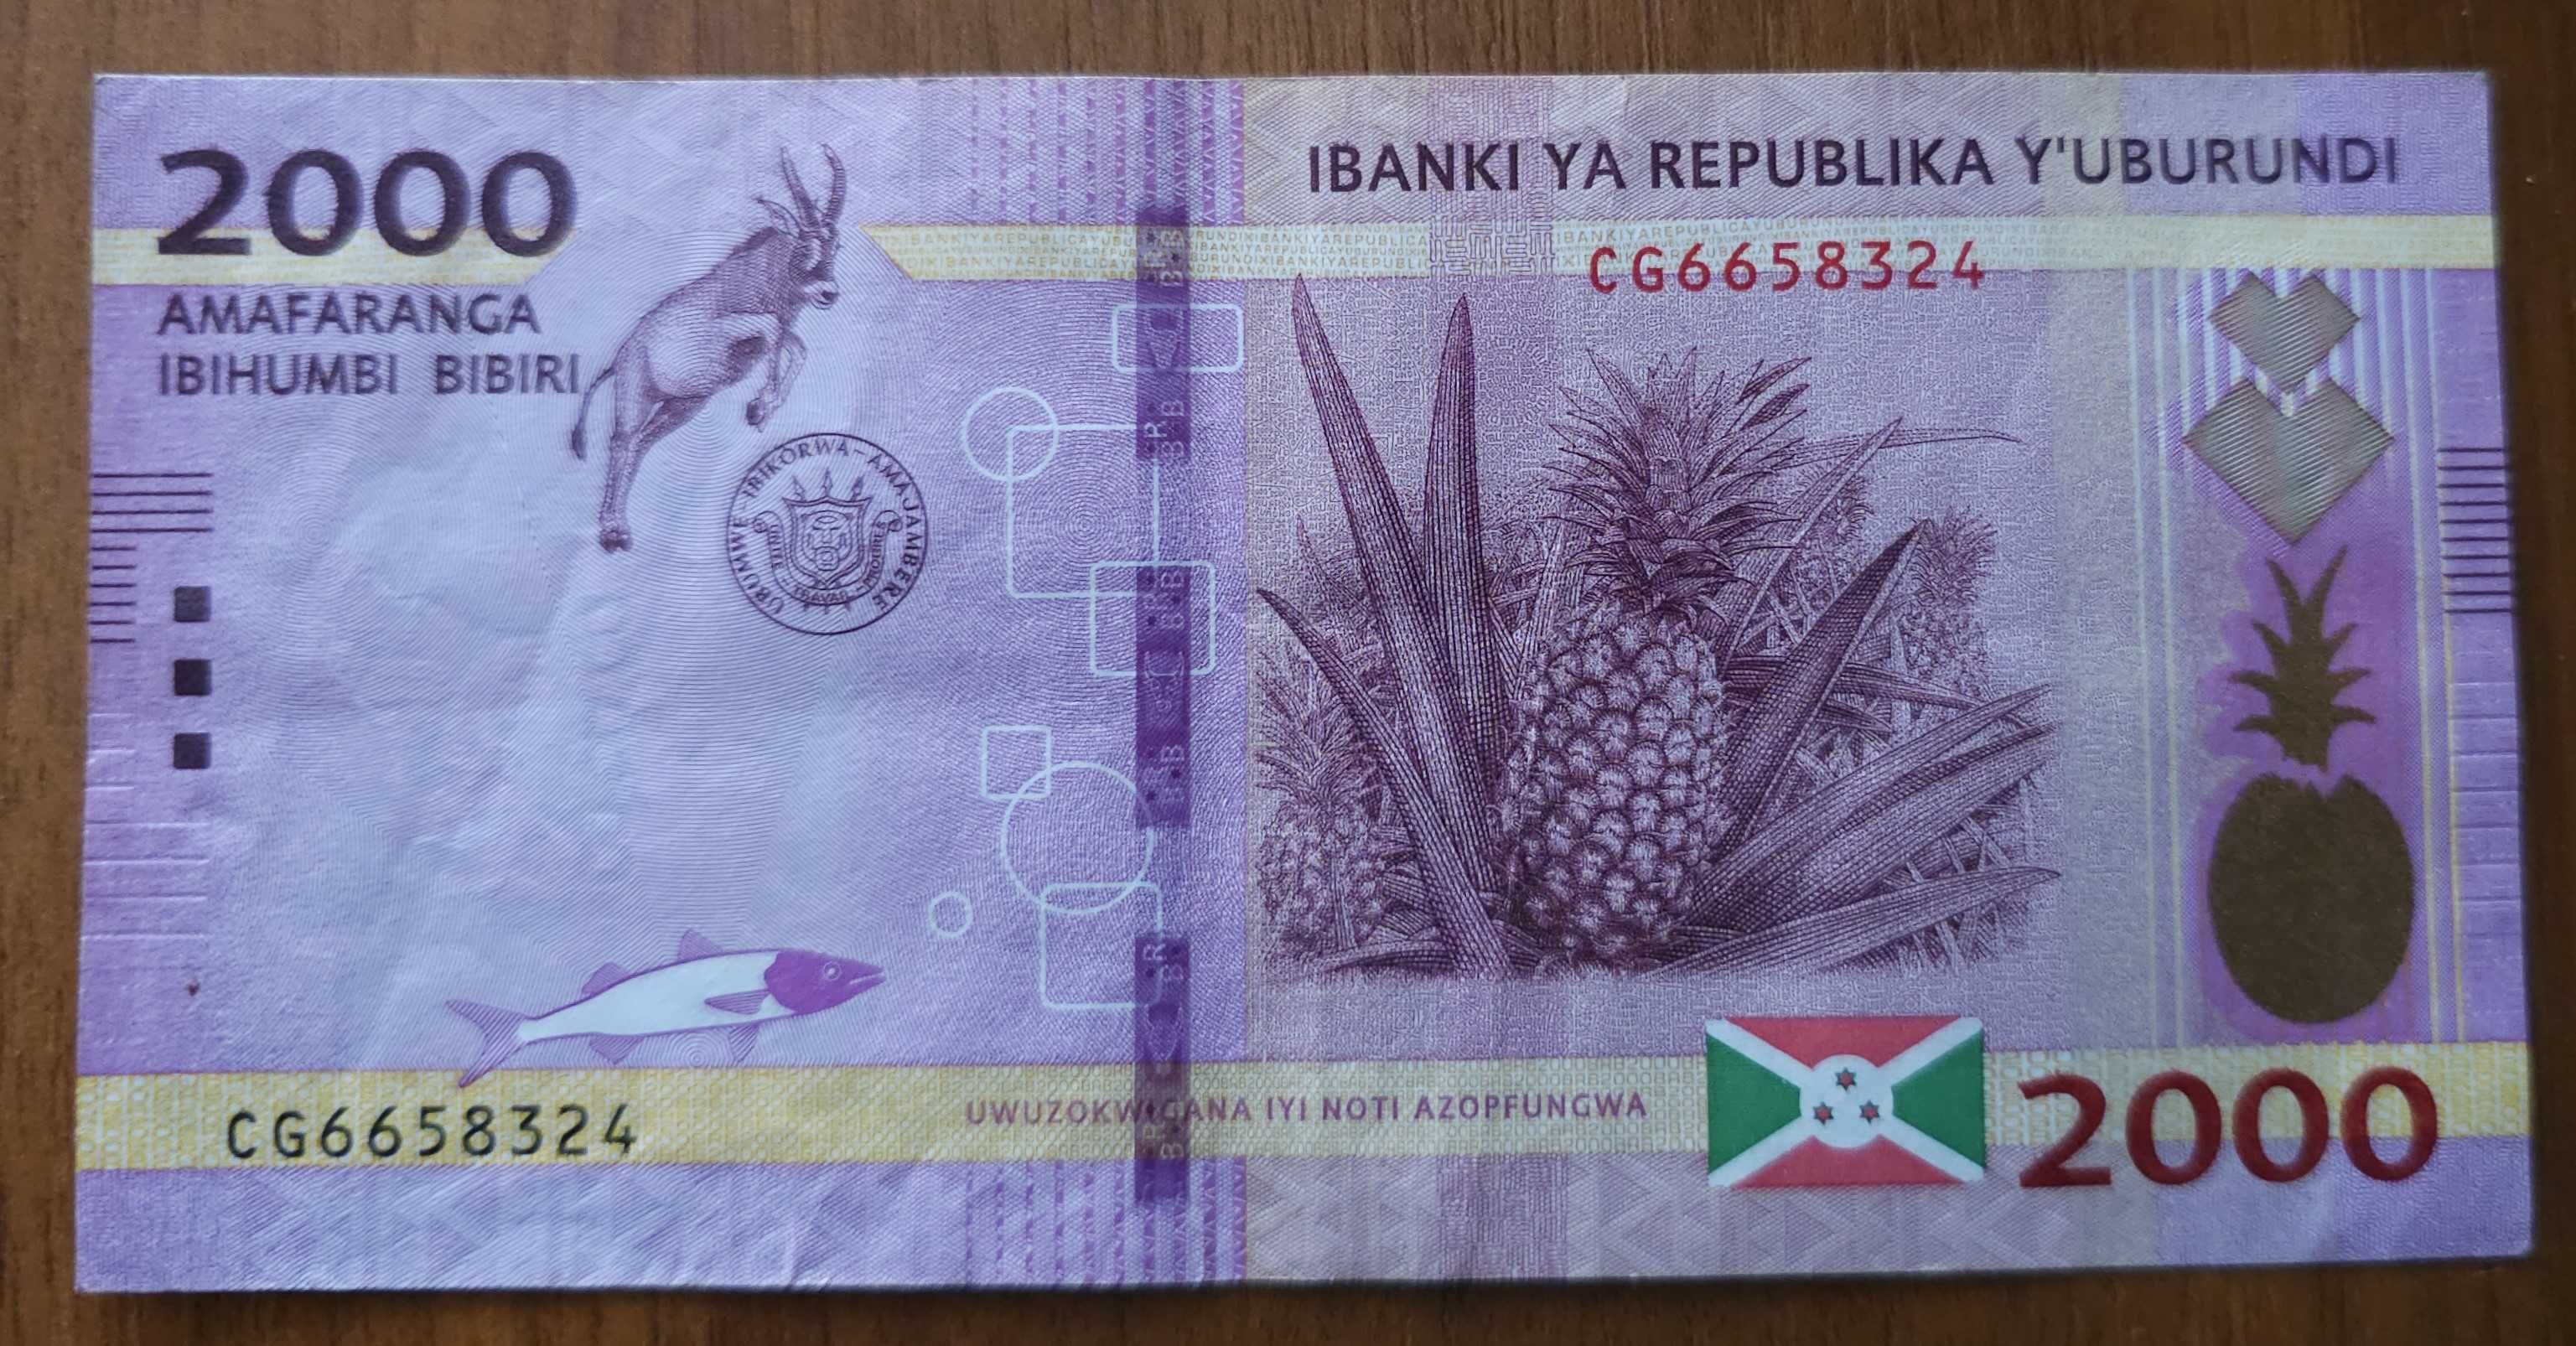 2000 francs 2018, Burundi, circulată